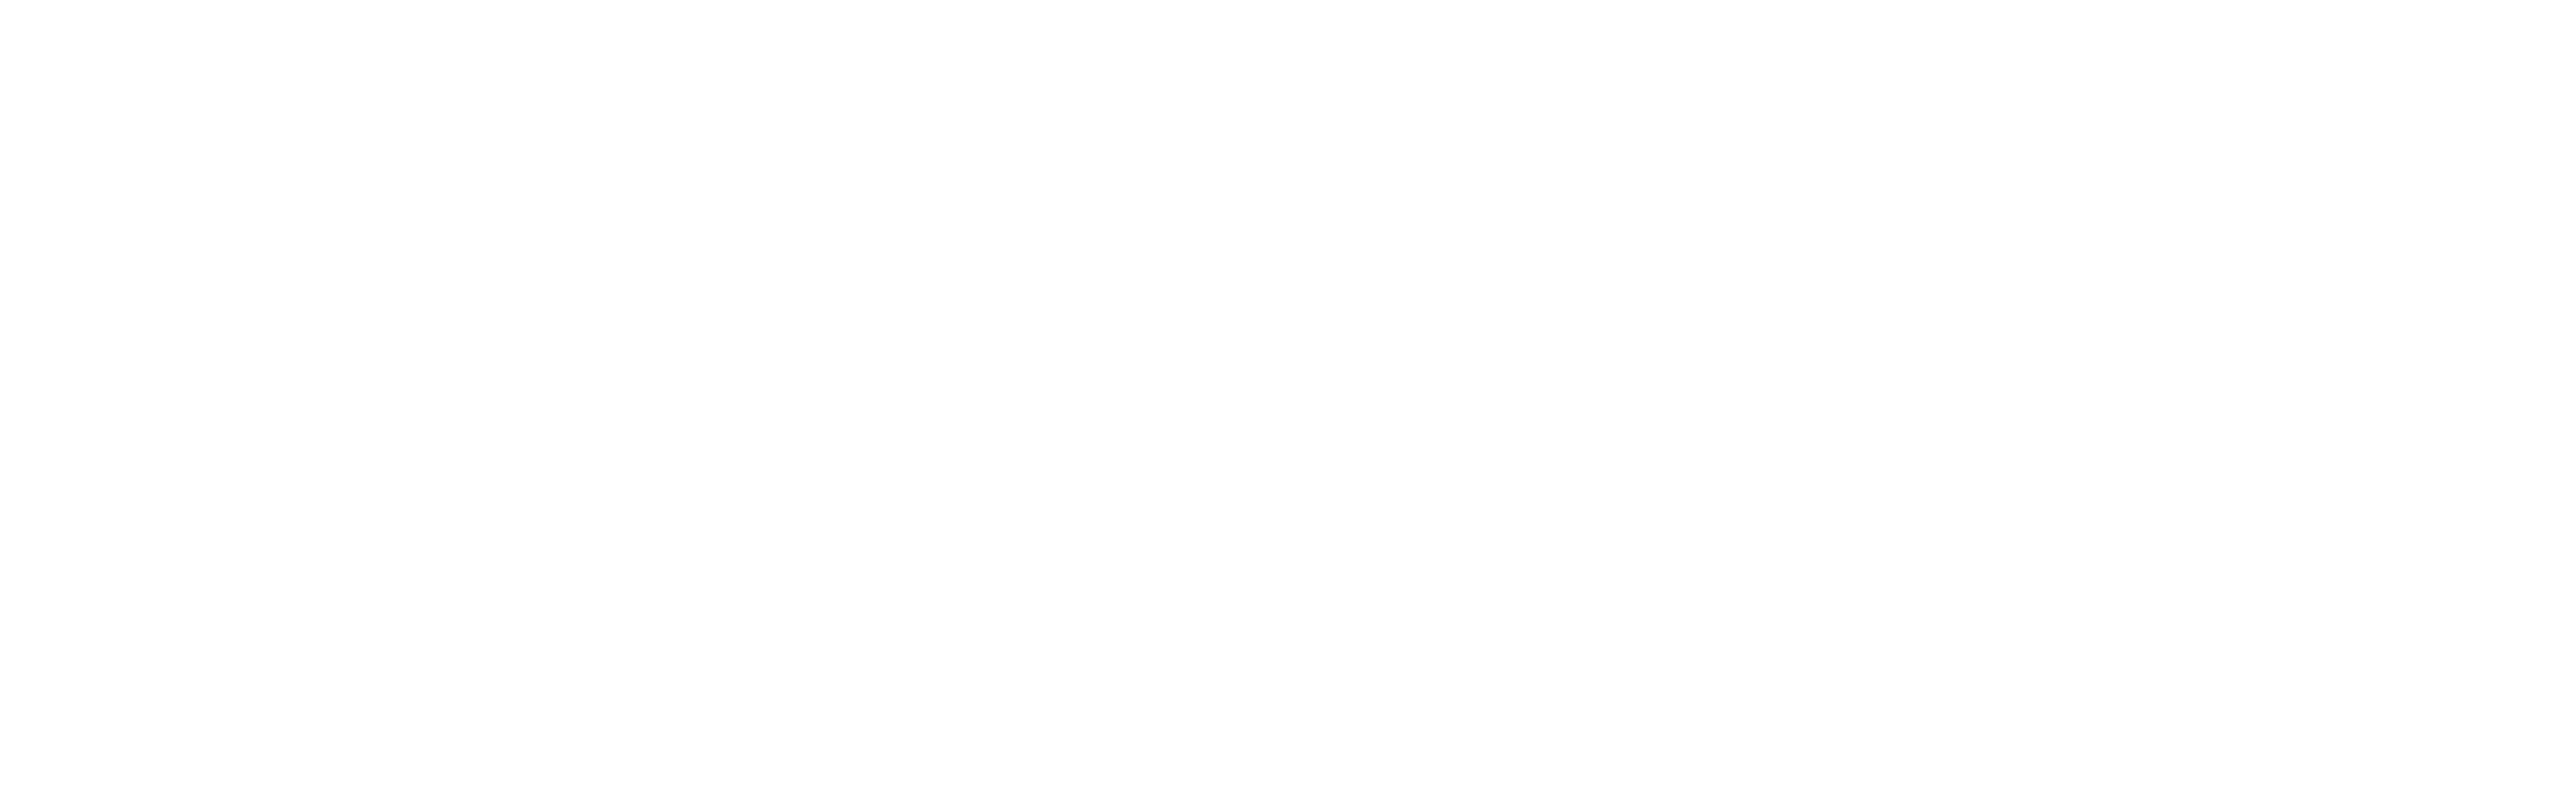 Tonstudio Dachstein